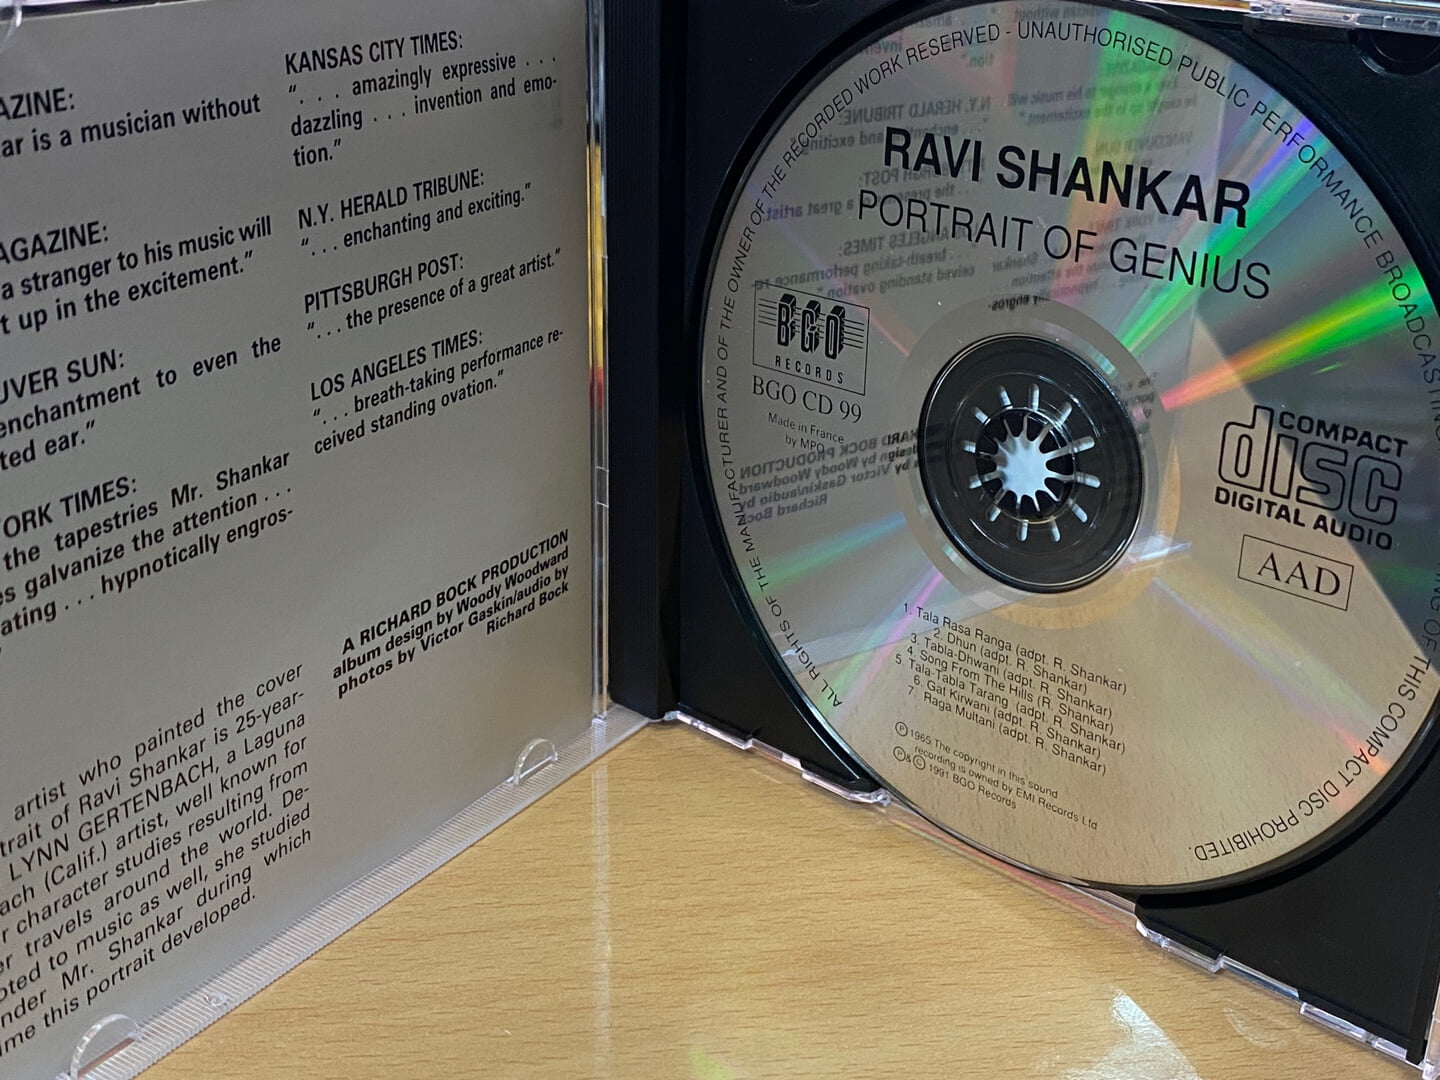 라비 샹카 - Ravi Shankar - Portrait Of Genius [U.K발매]